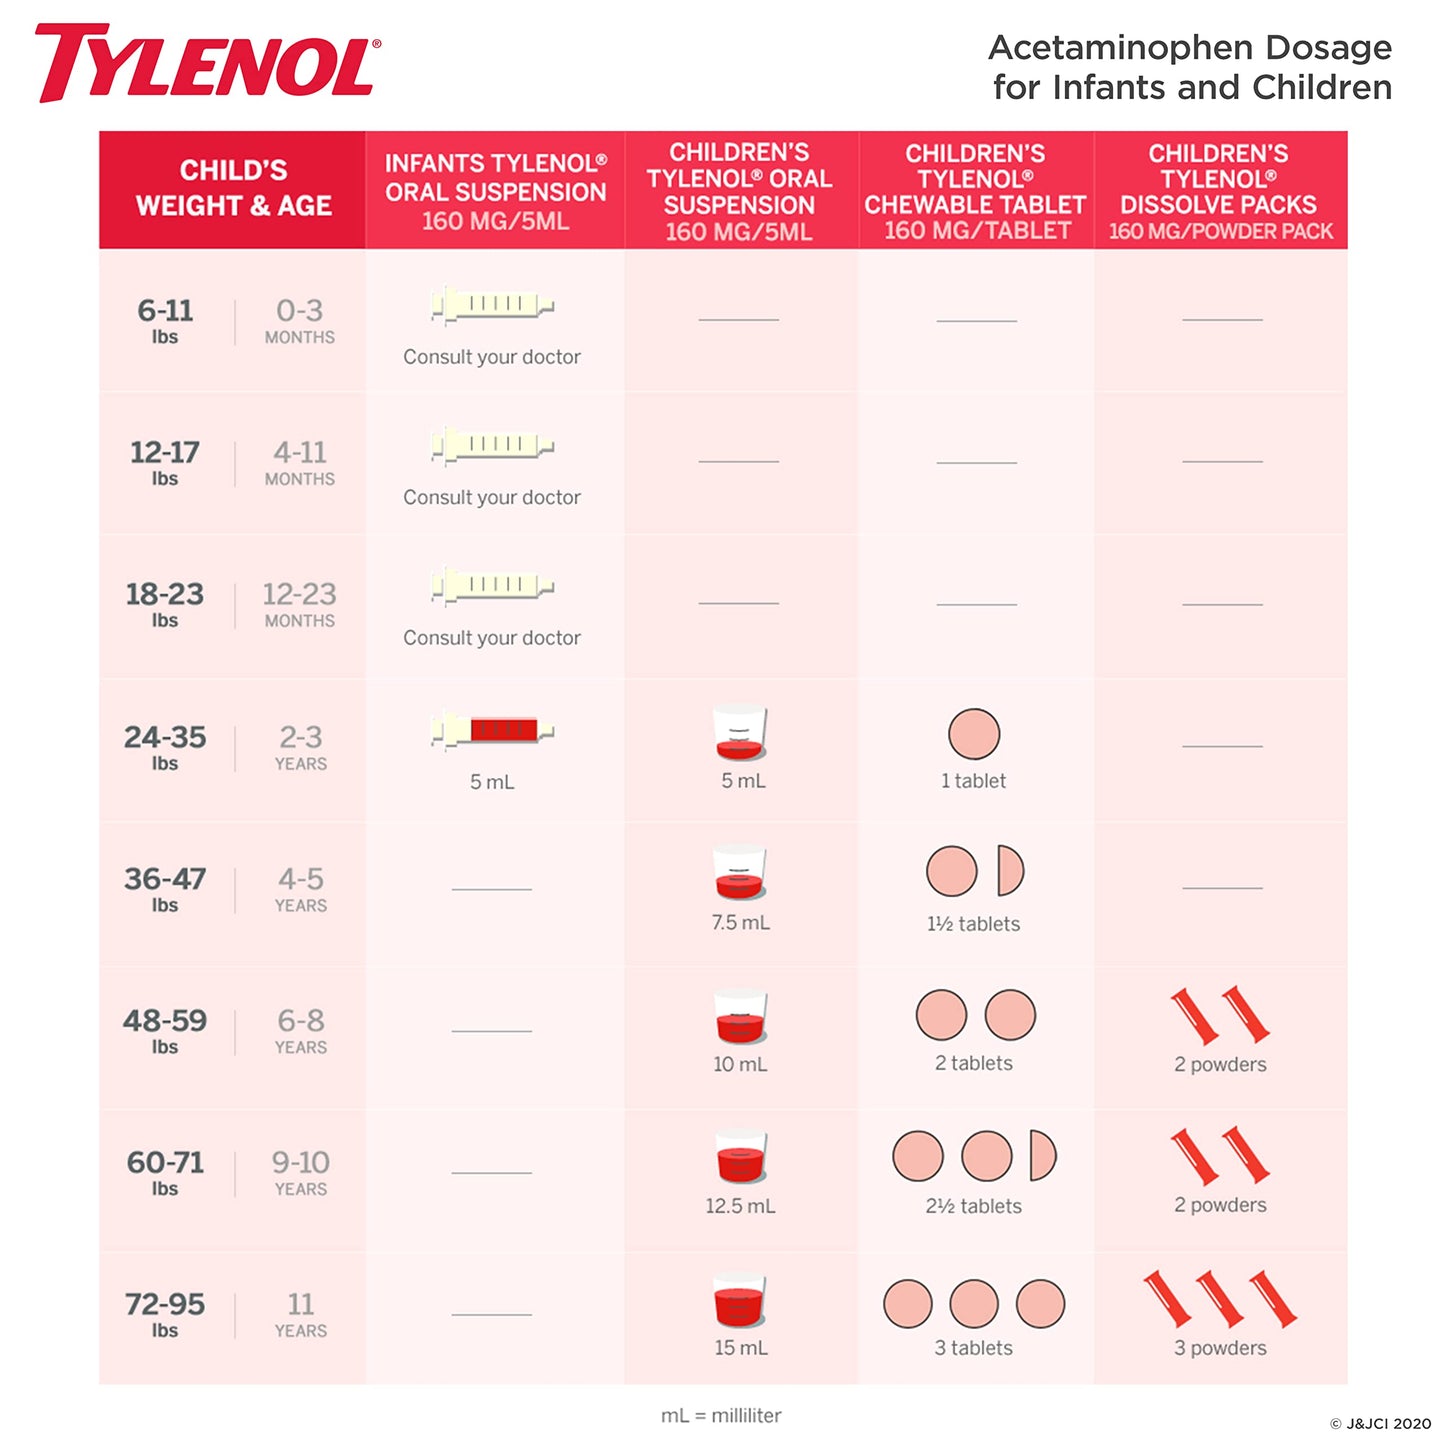 Tylenol Children's Chewable, Grape, 24 Count